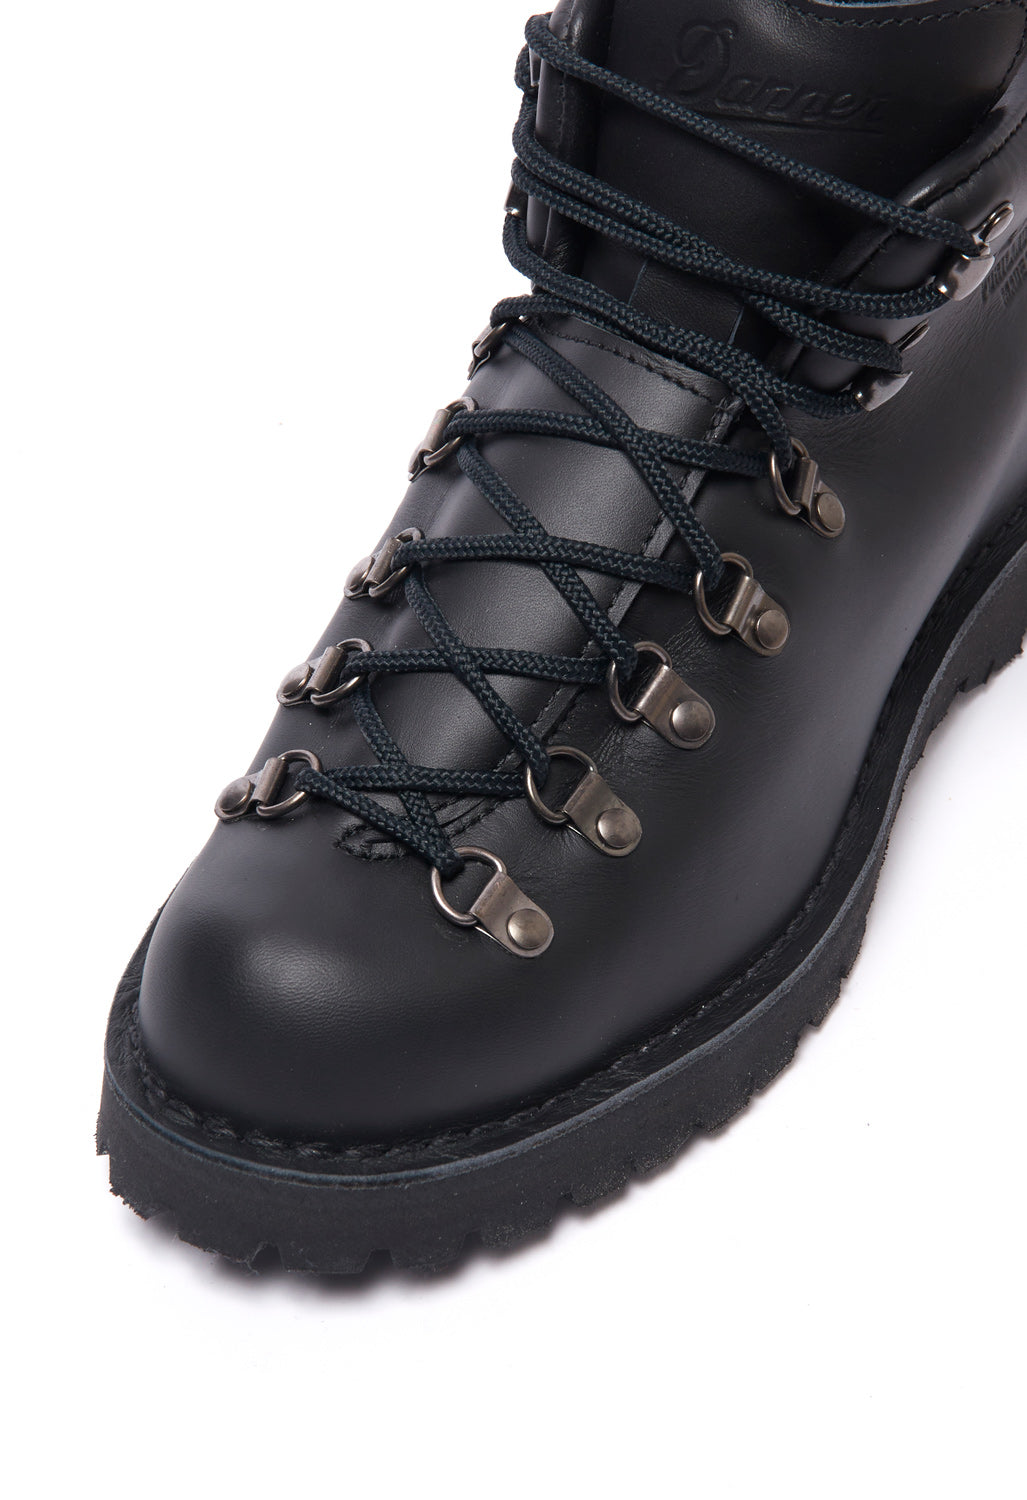 Danner Mountain Light Men's Boots - Black